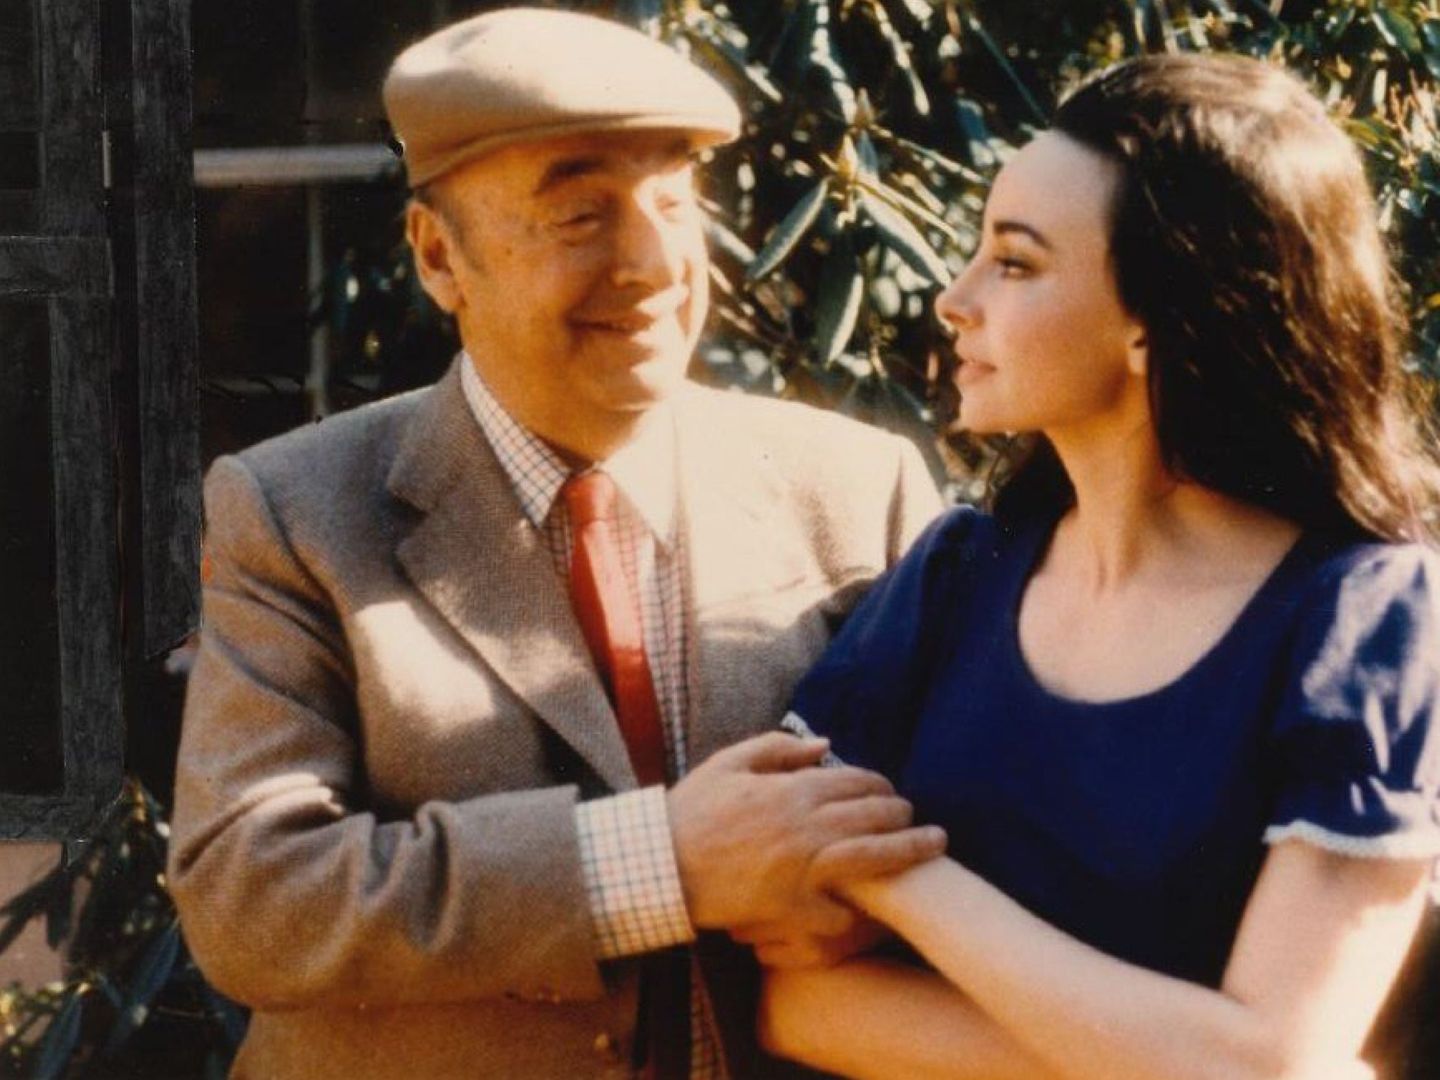 Fotografía facilitada por Elena Castedo, en la que aparece junto a Pablo Neruda durante una reunión familiar y de amigos en Chile. (EFE/Elena Castedo)